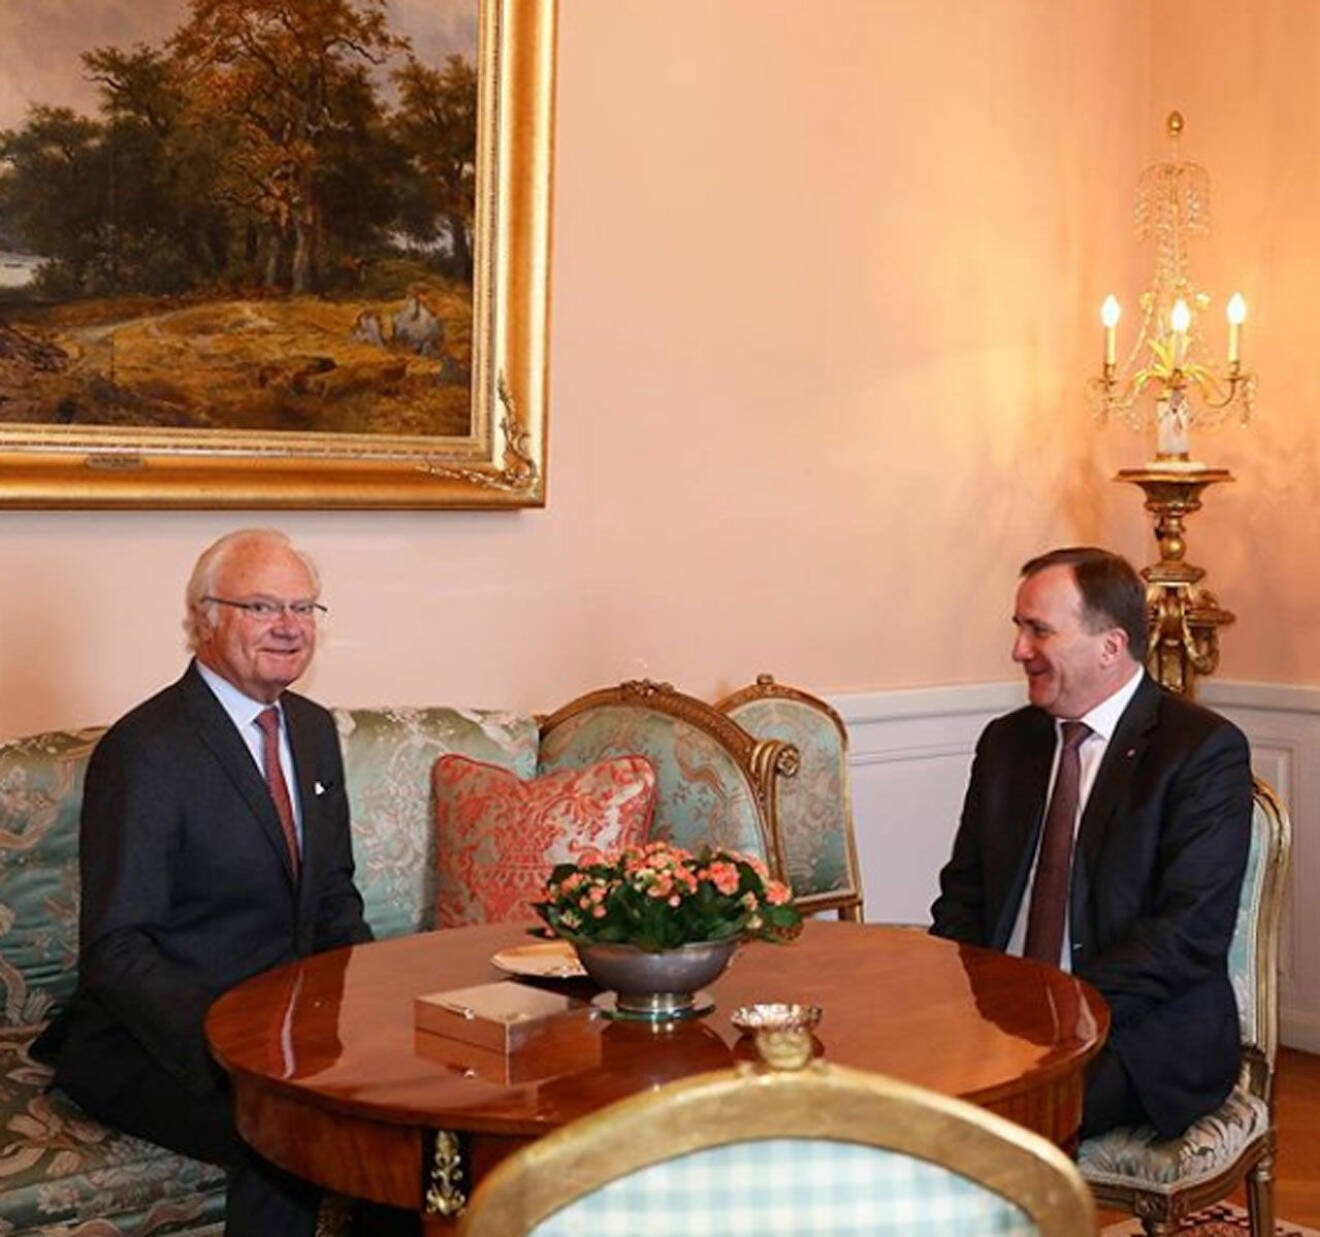 Kungen och statsminister Stefan Löfven träffas på slottet.